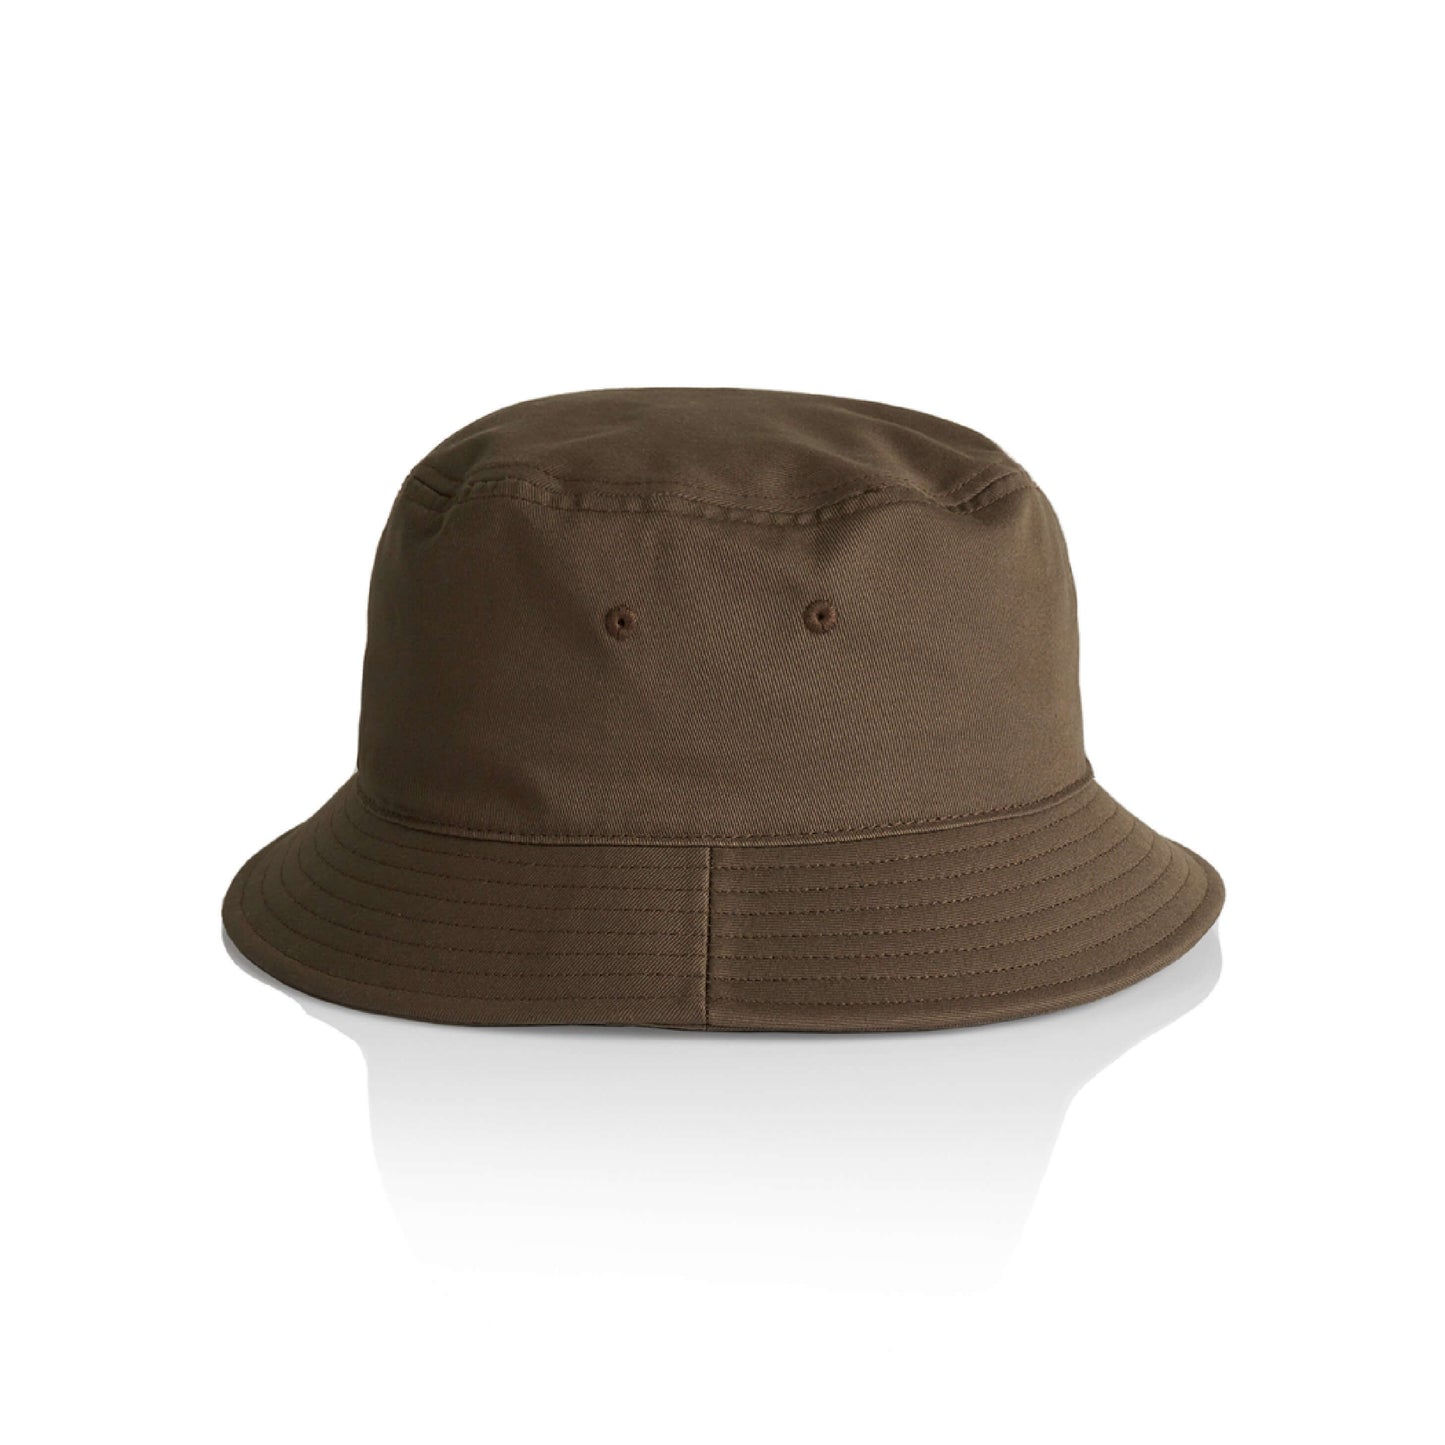 Light Mid Weight Cotton Bucket Hat